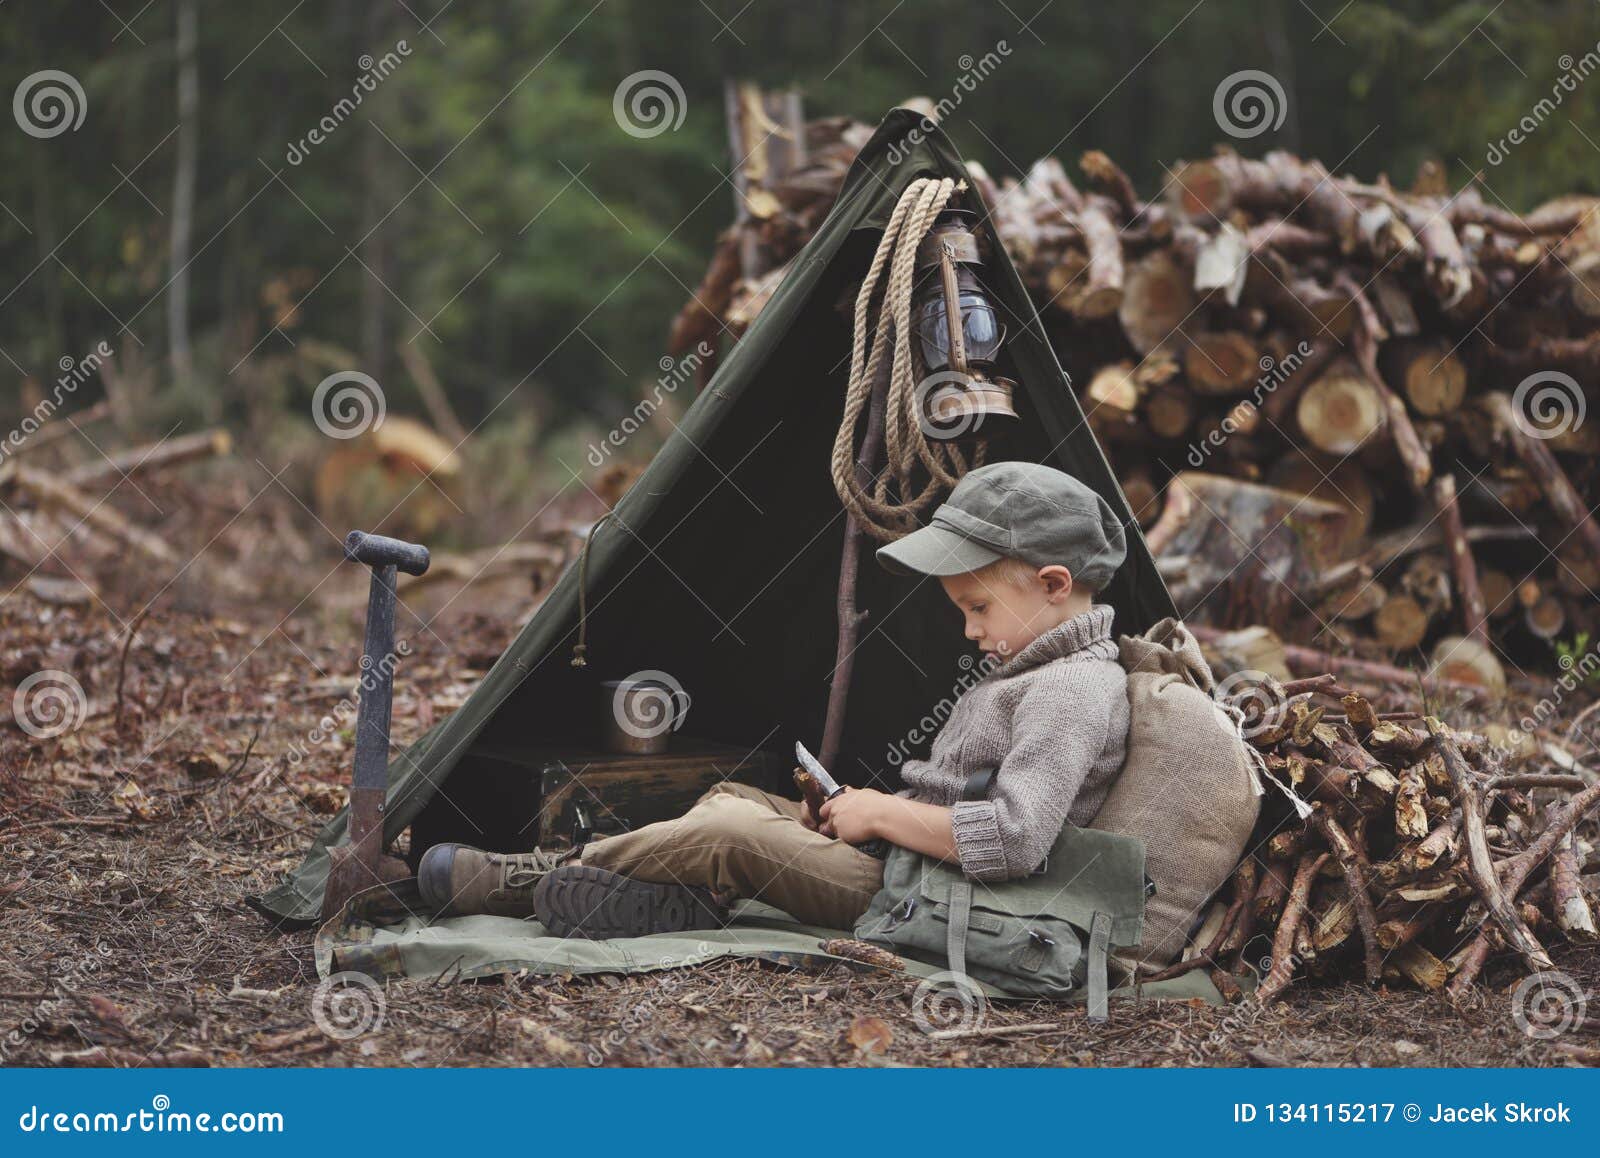 the boy, 5 years old, looks like a trapper, wanderer, lumberjack.